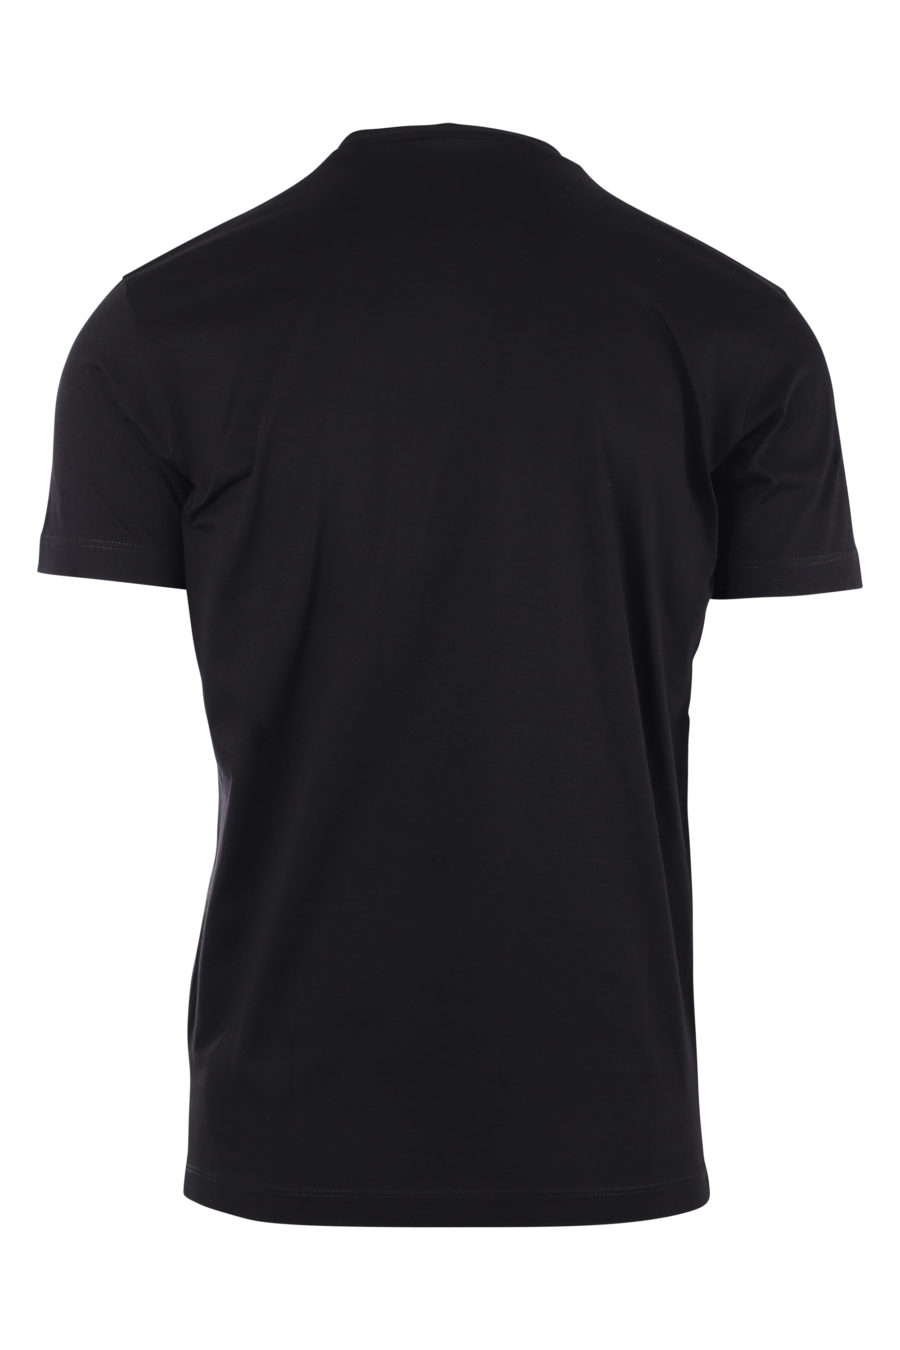 T-shirt schwarz mit Logo ceresio 9 - IMG 9728